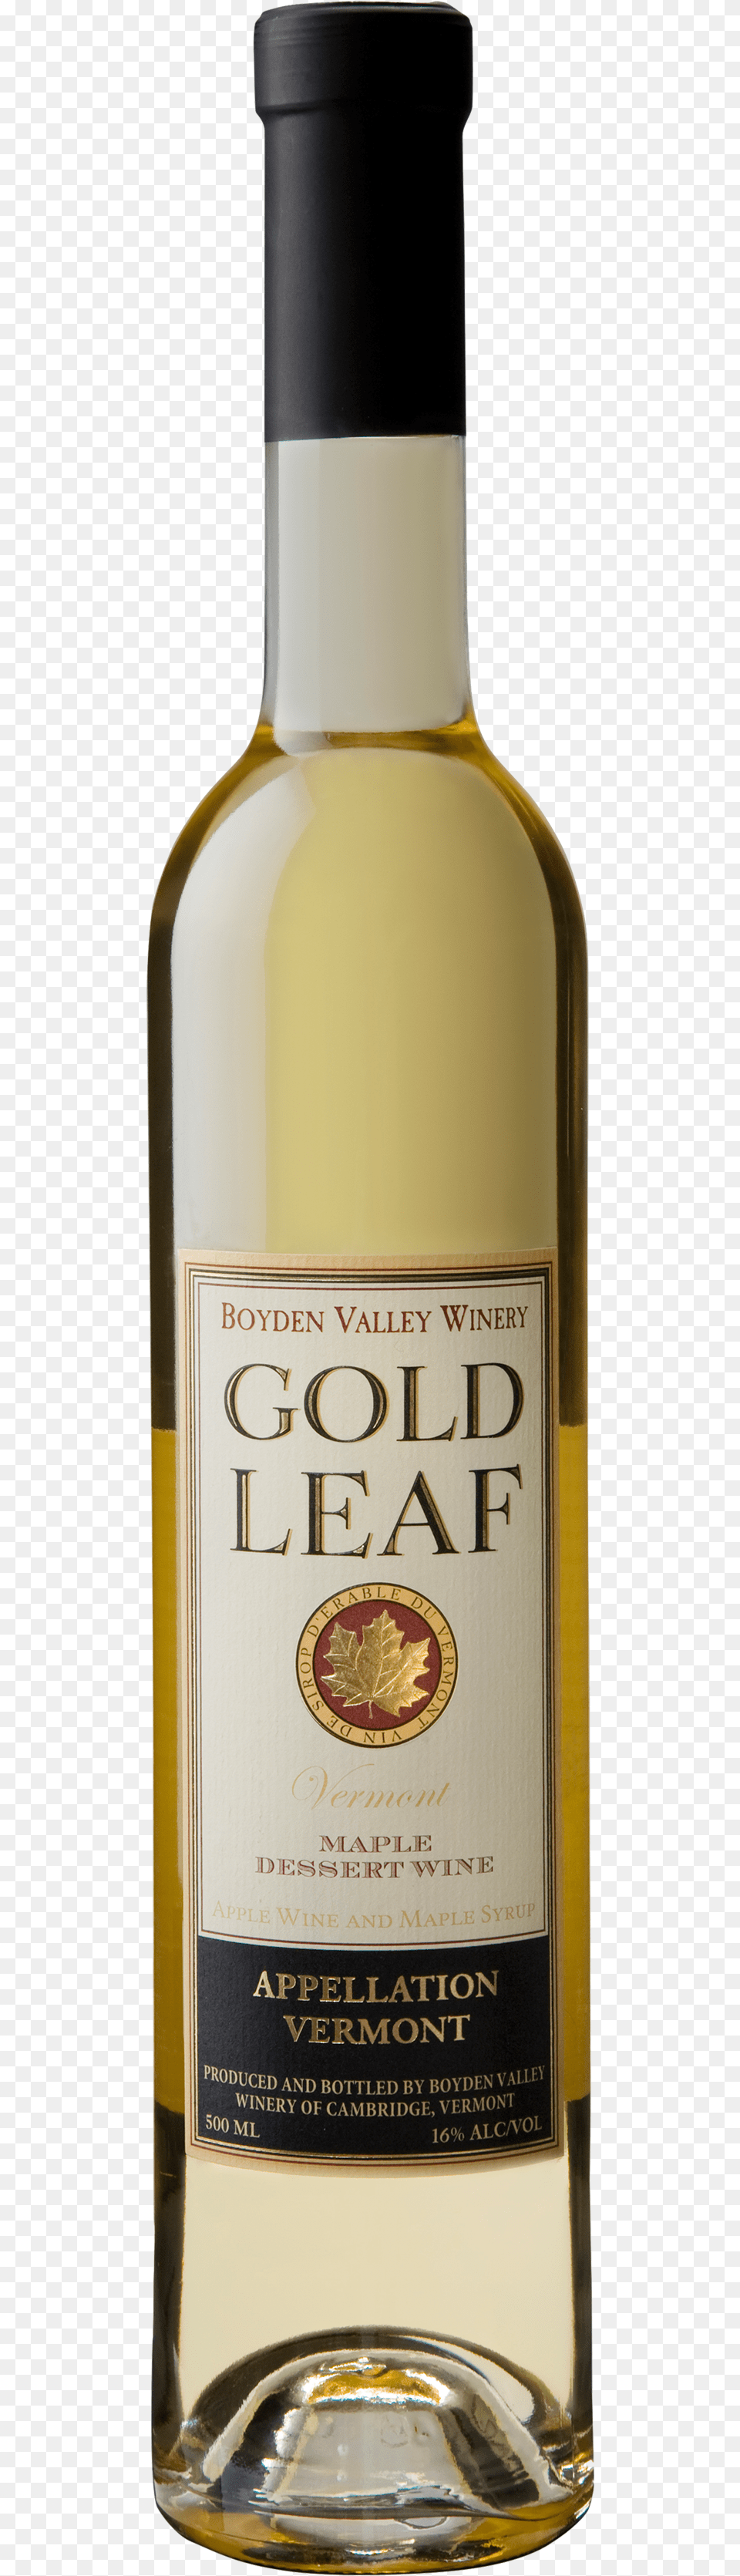 Gold Leaf Golden Leaf Wine, Alcohol, Beverage, Bottle, Liquor Free Transparent Png